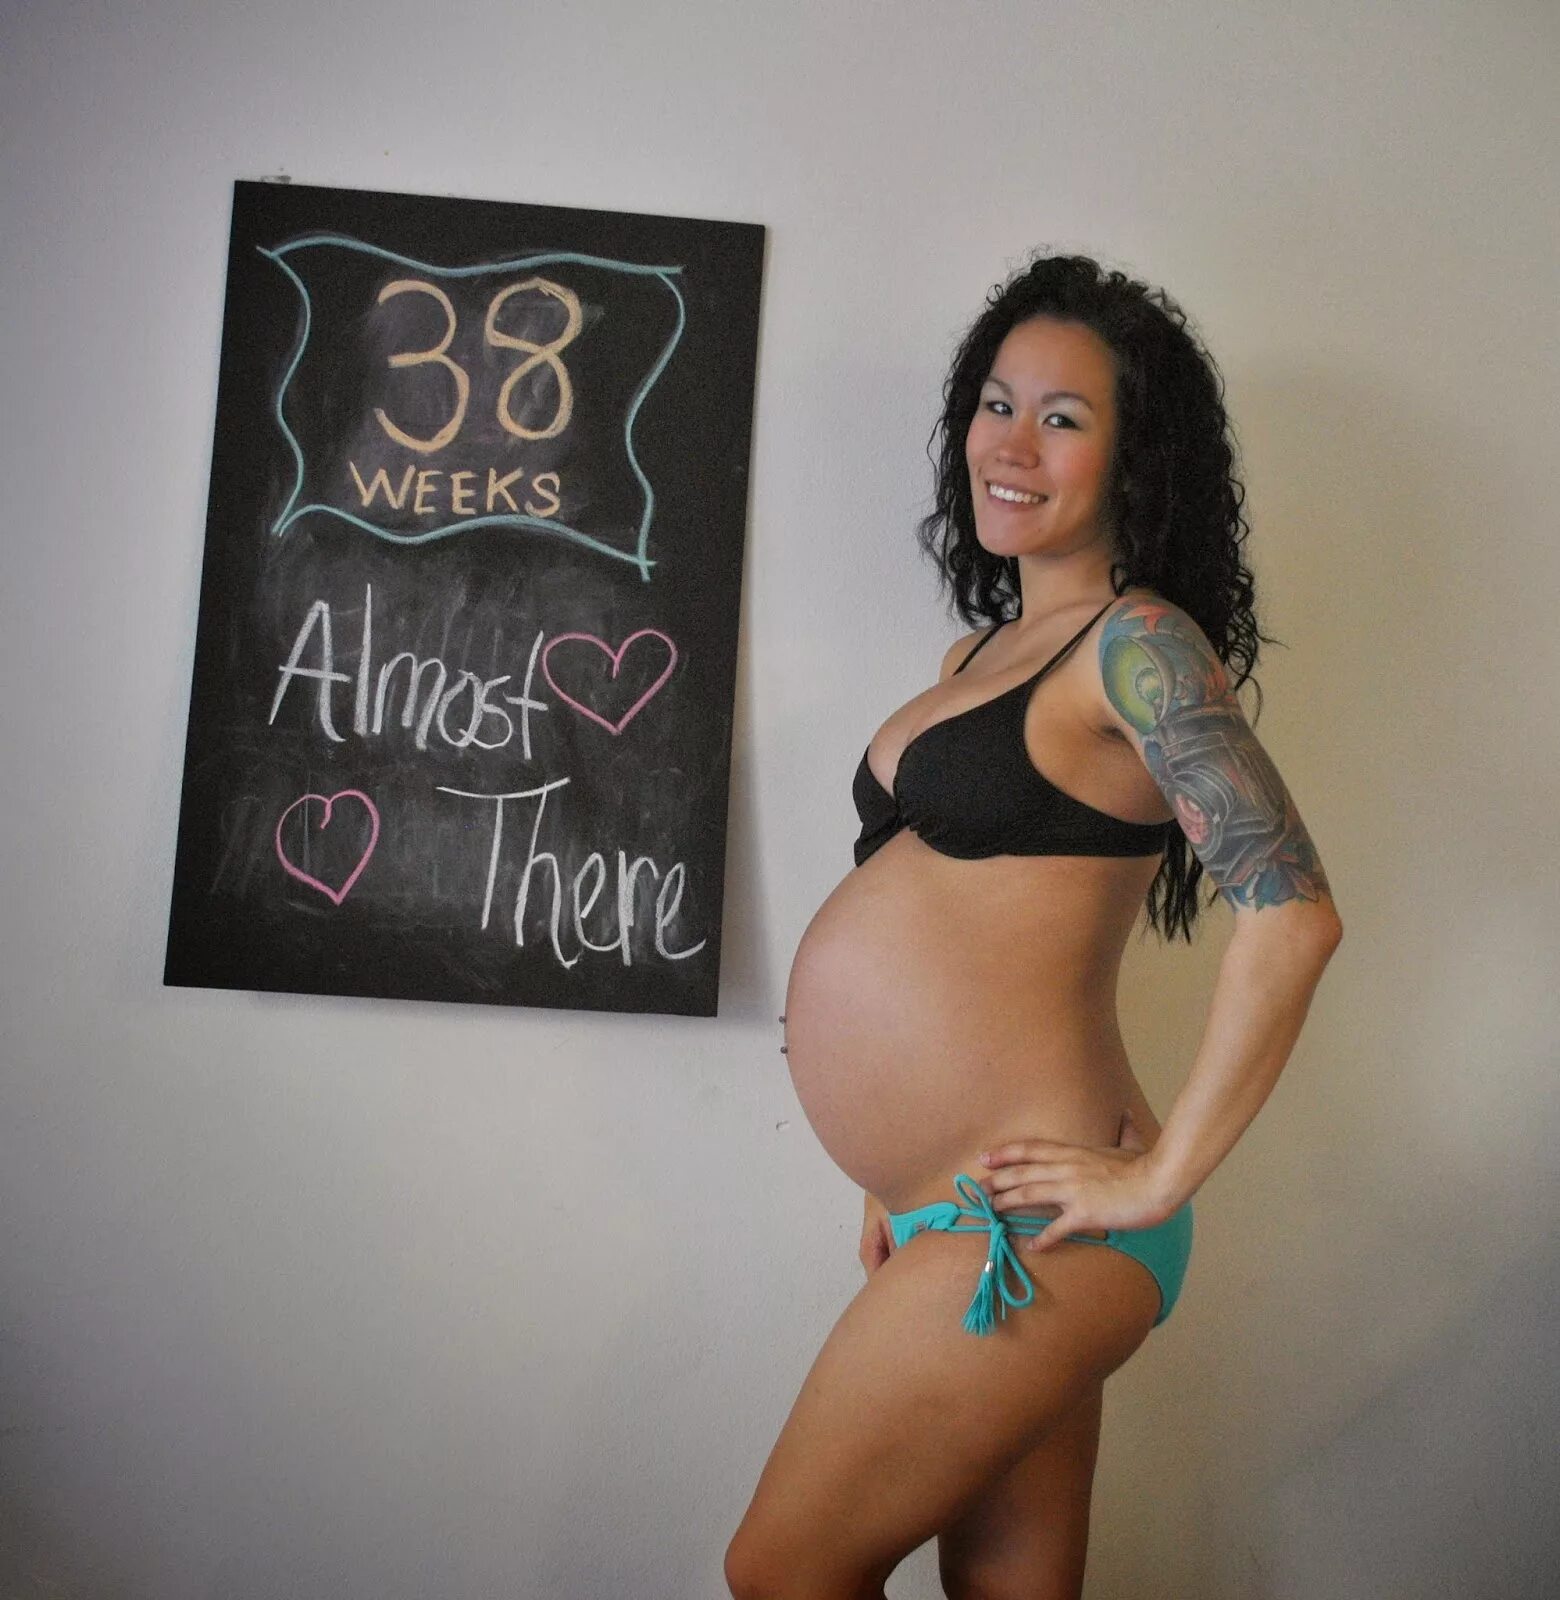 38 Weeks pregnant.